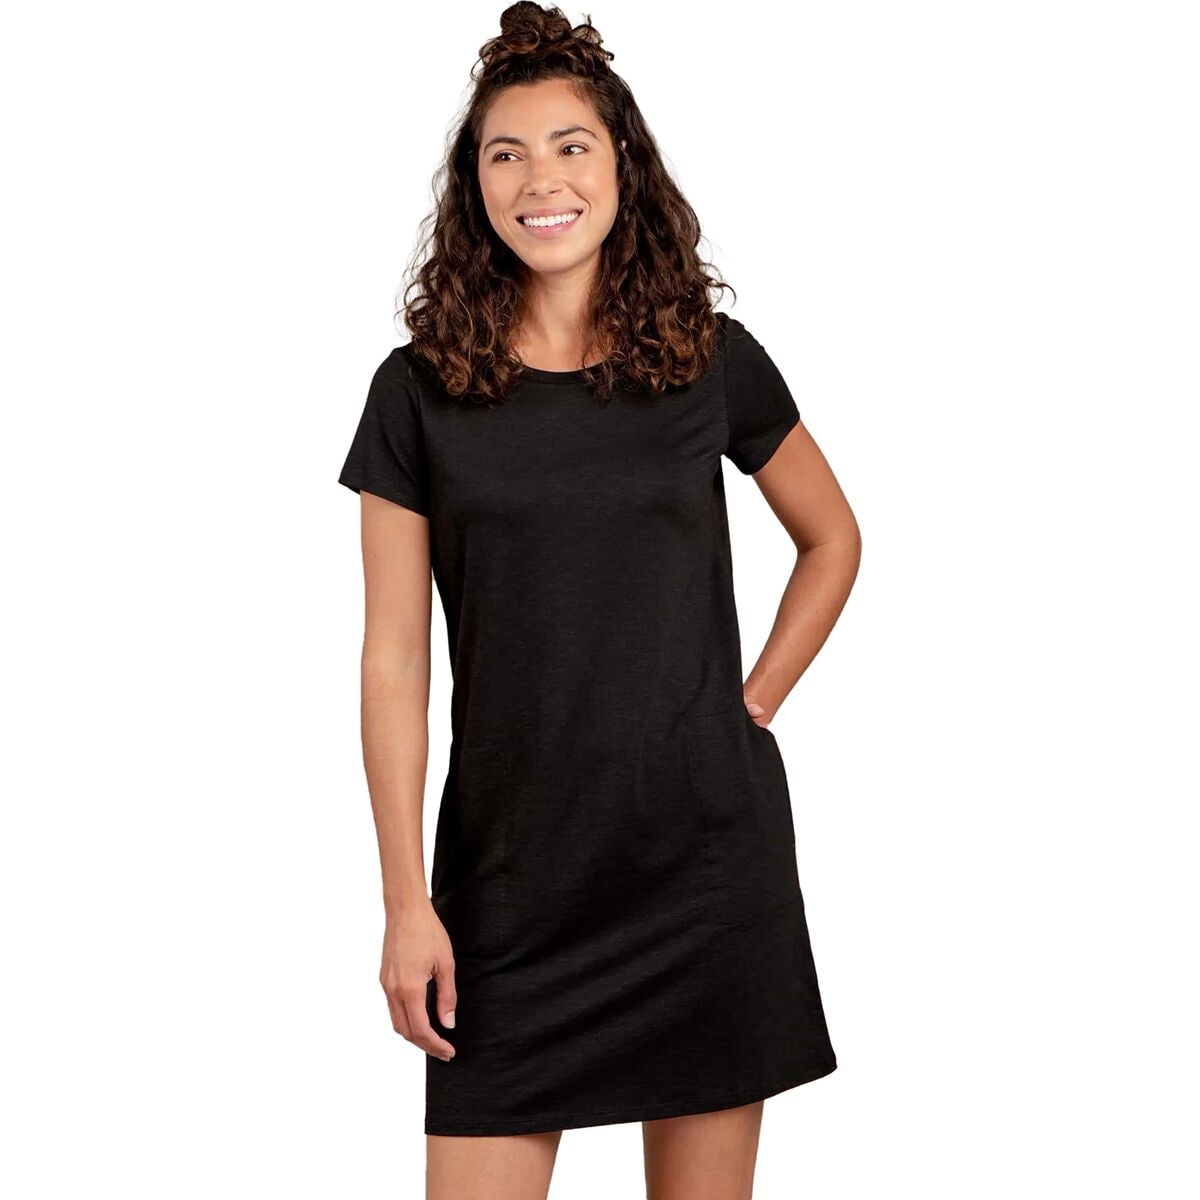 Windmere II Short-Sleeve Dress - Women